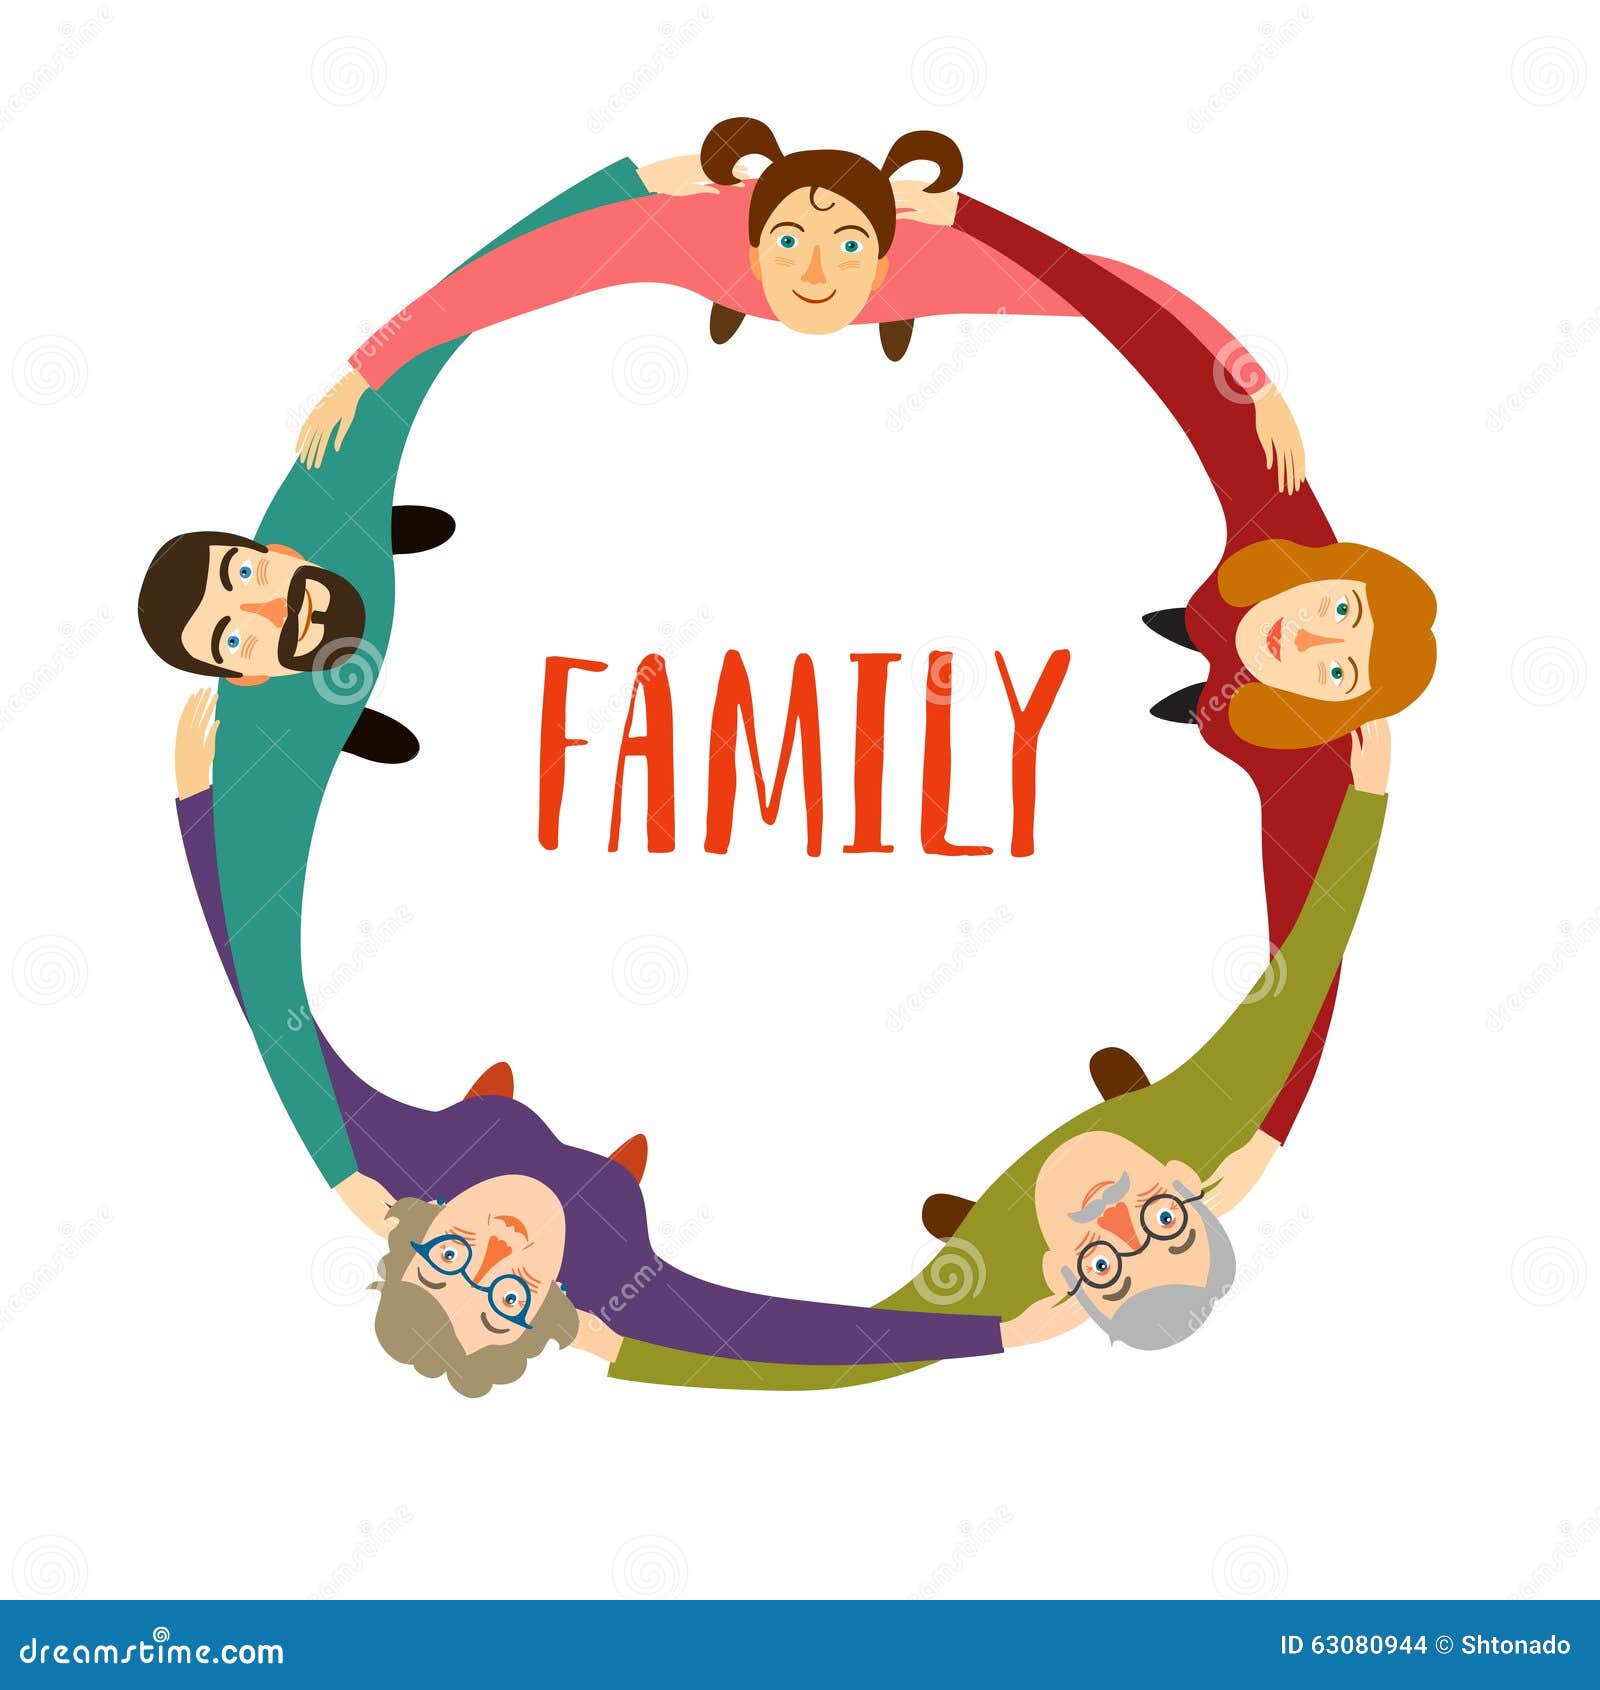 family unity clipart - photo #42